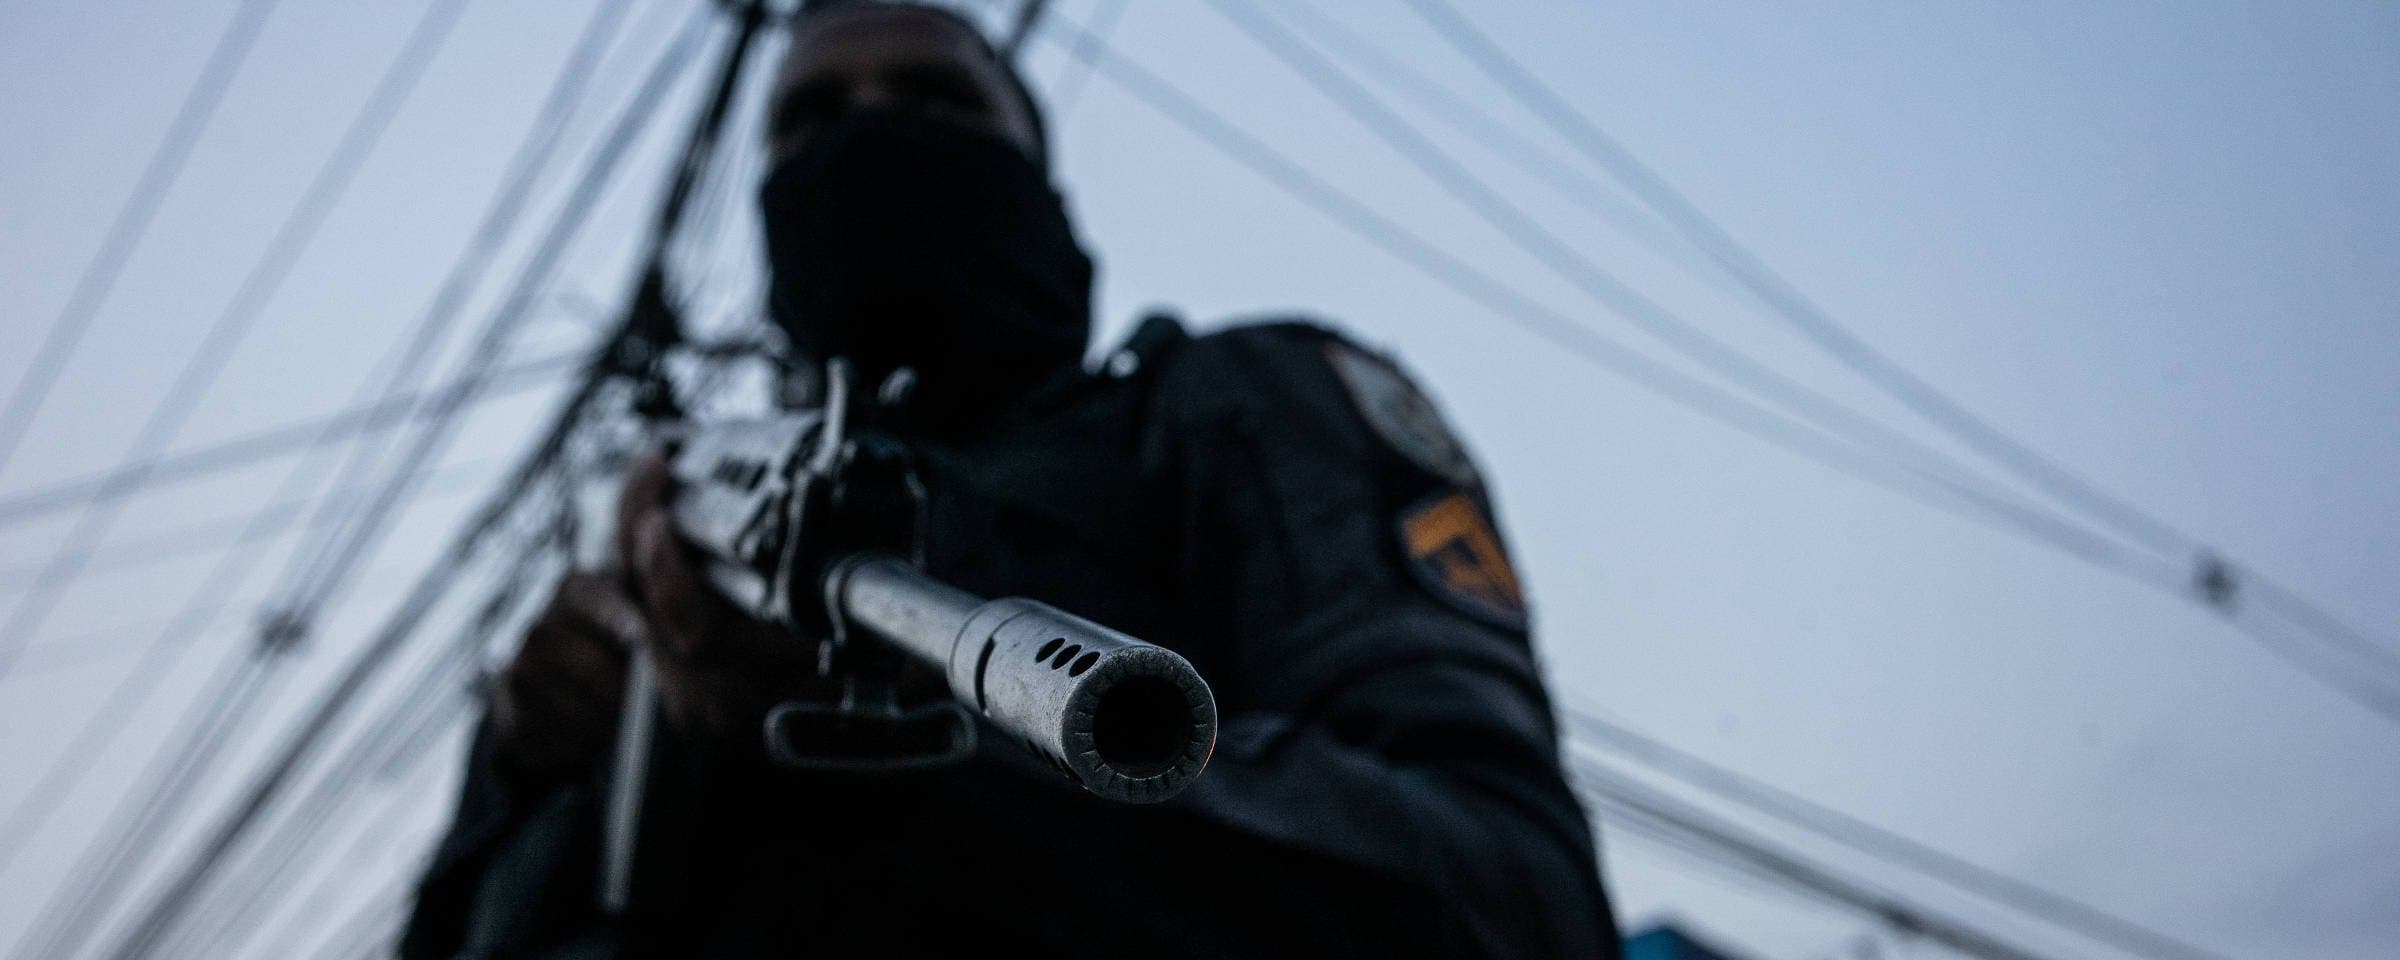 Em busca de fuzis, polícia do Rio mata até sem apreender arma